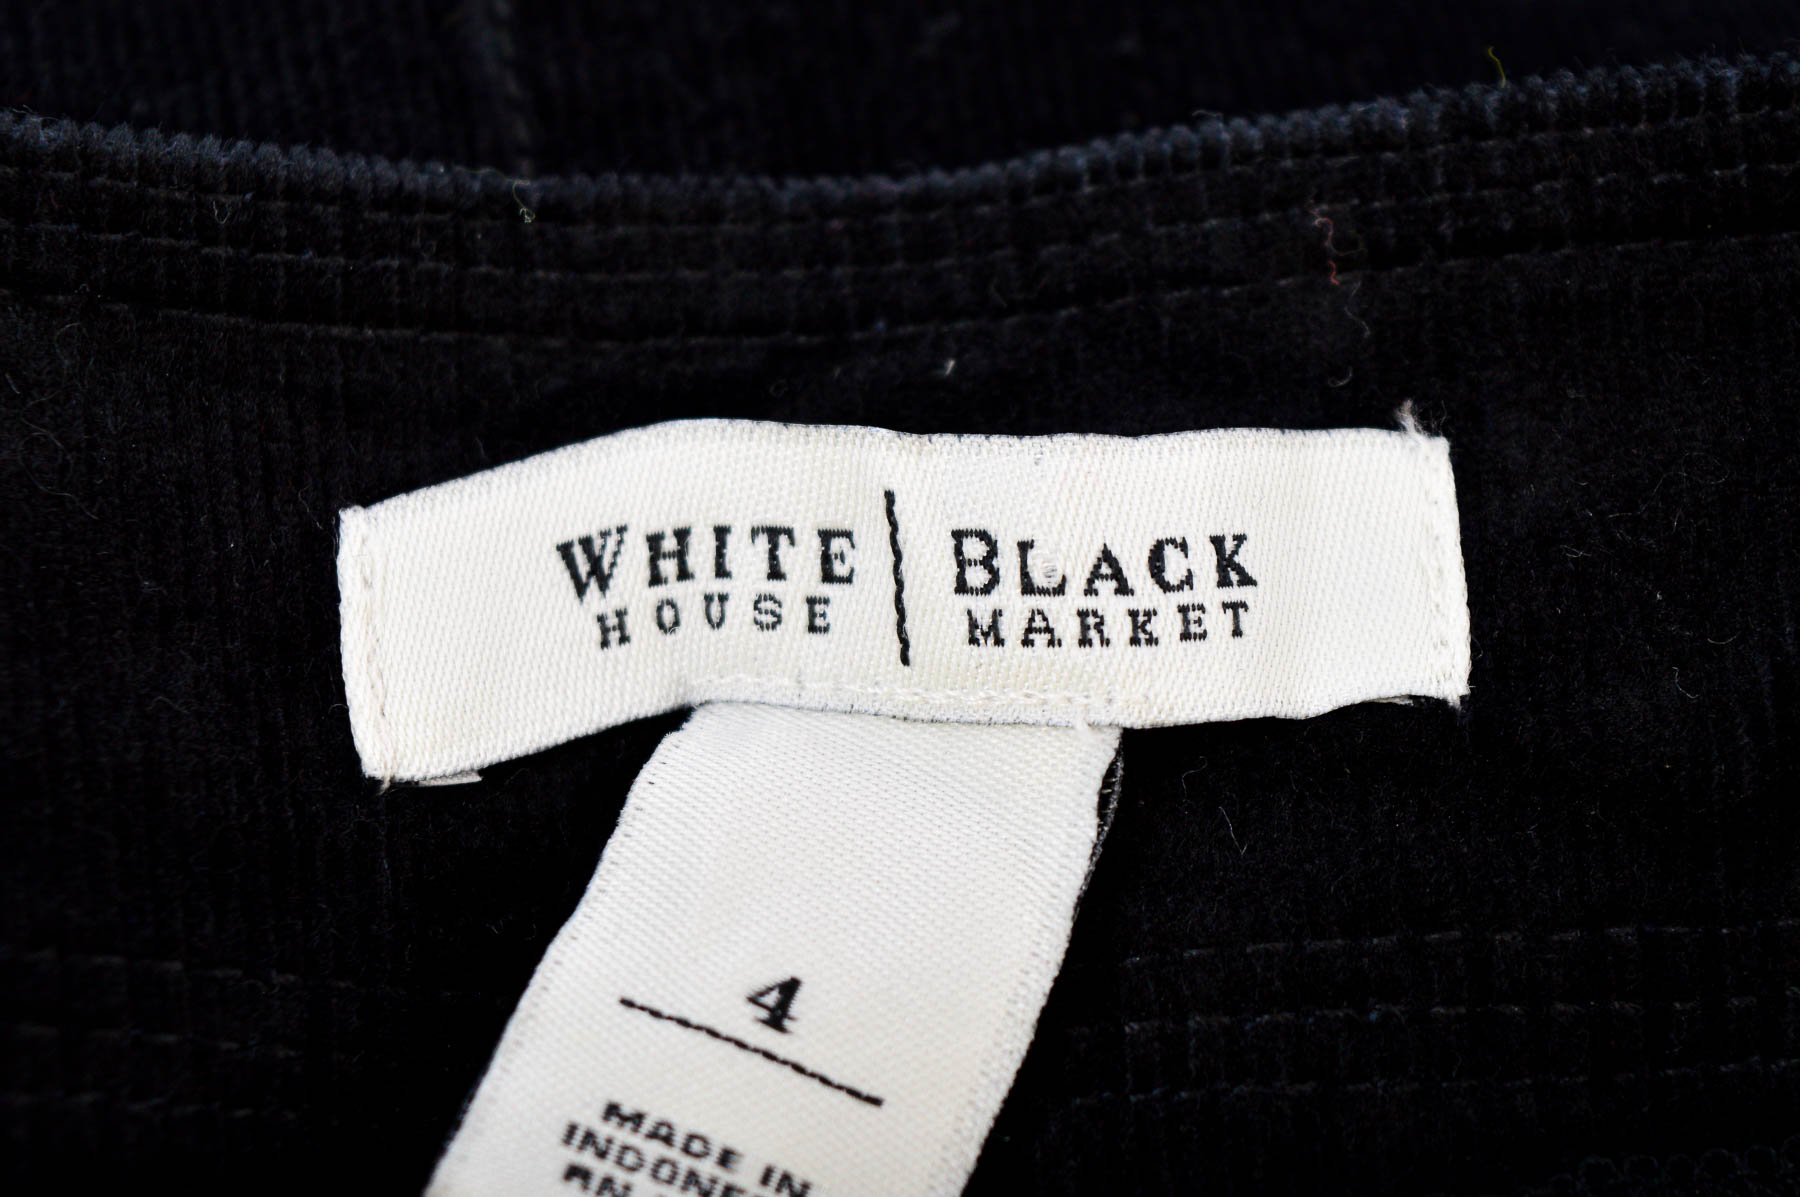 Skirt - White House | Black Market - 2